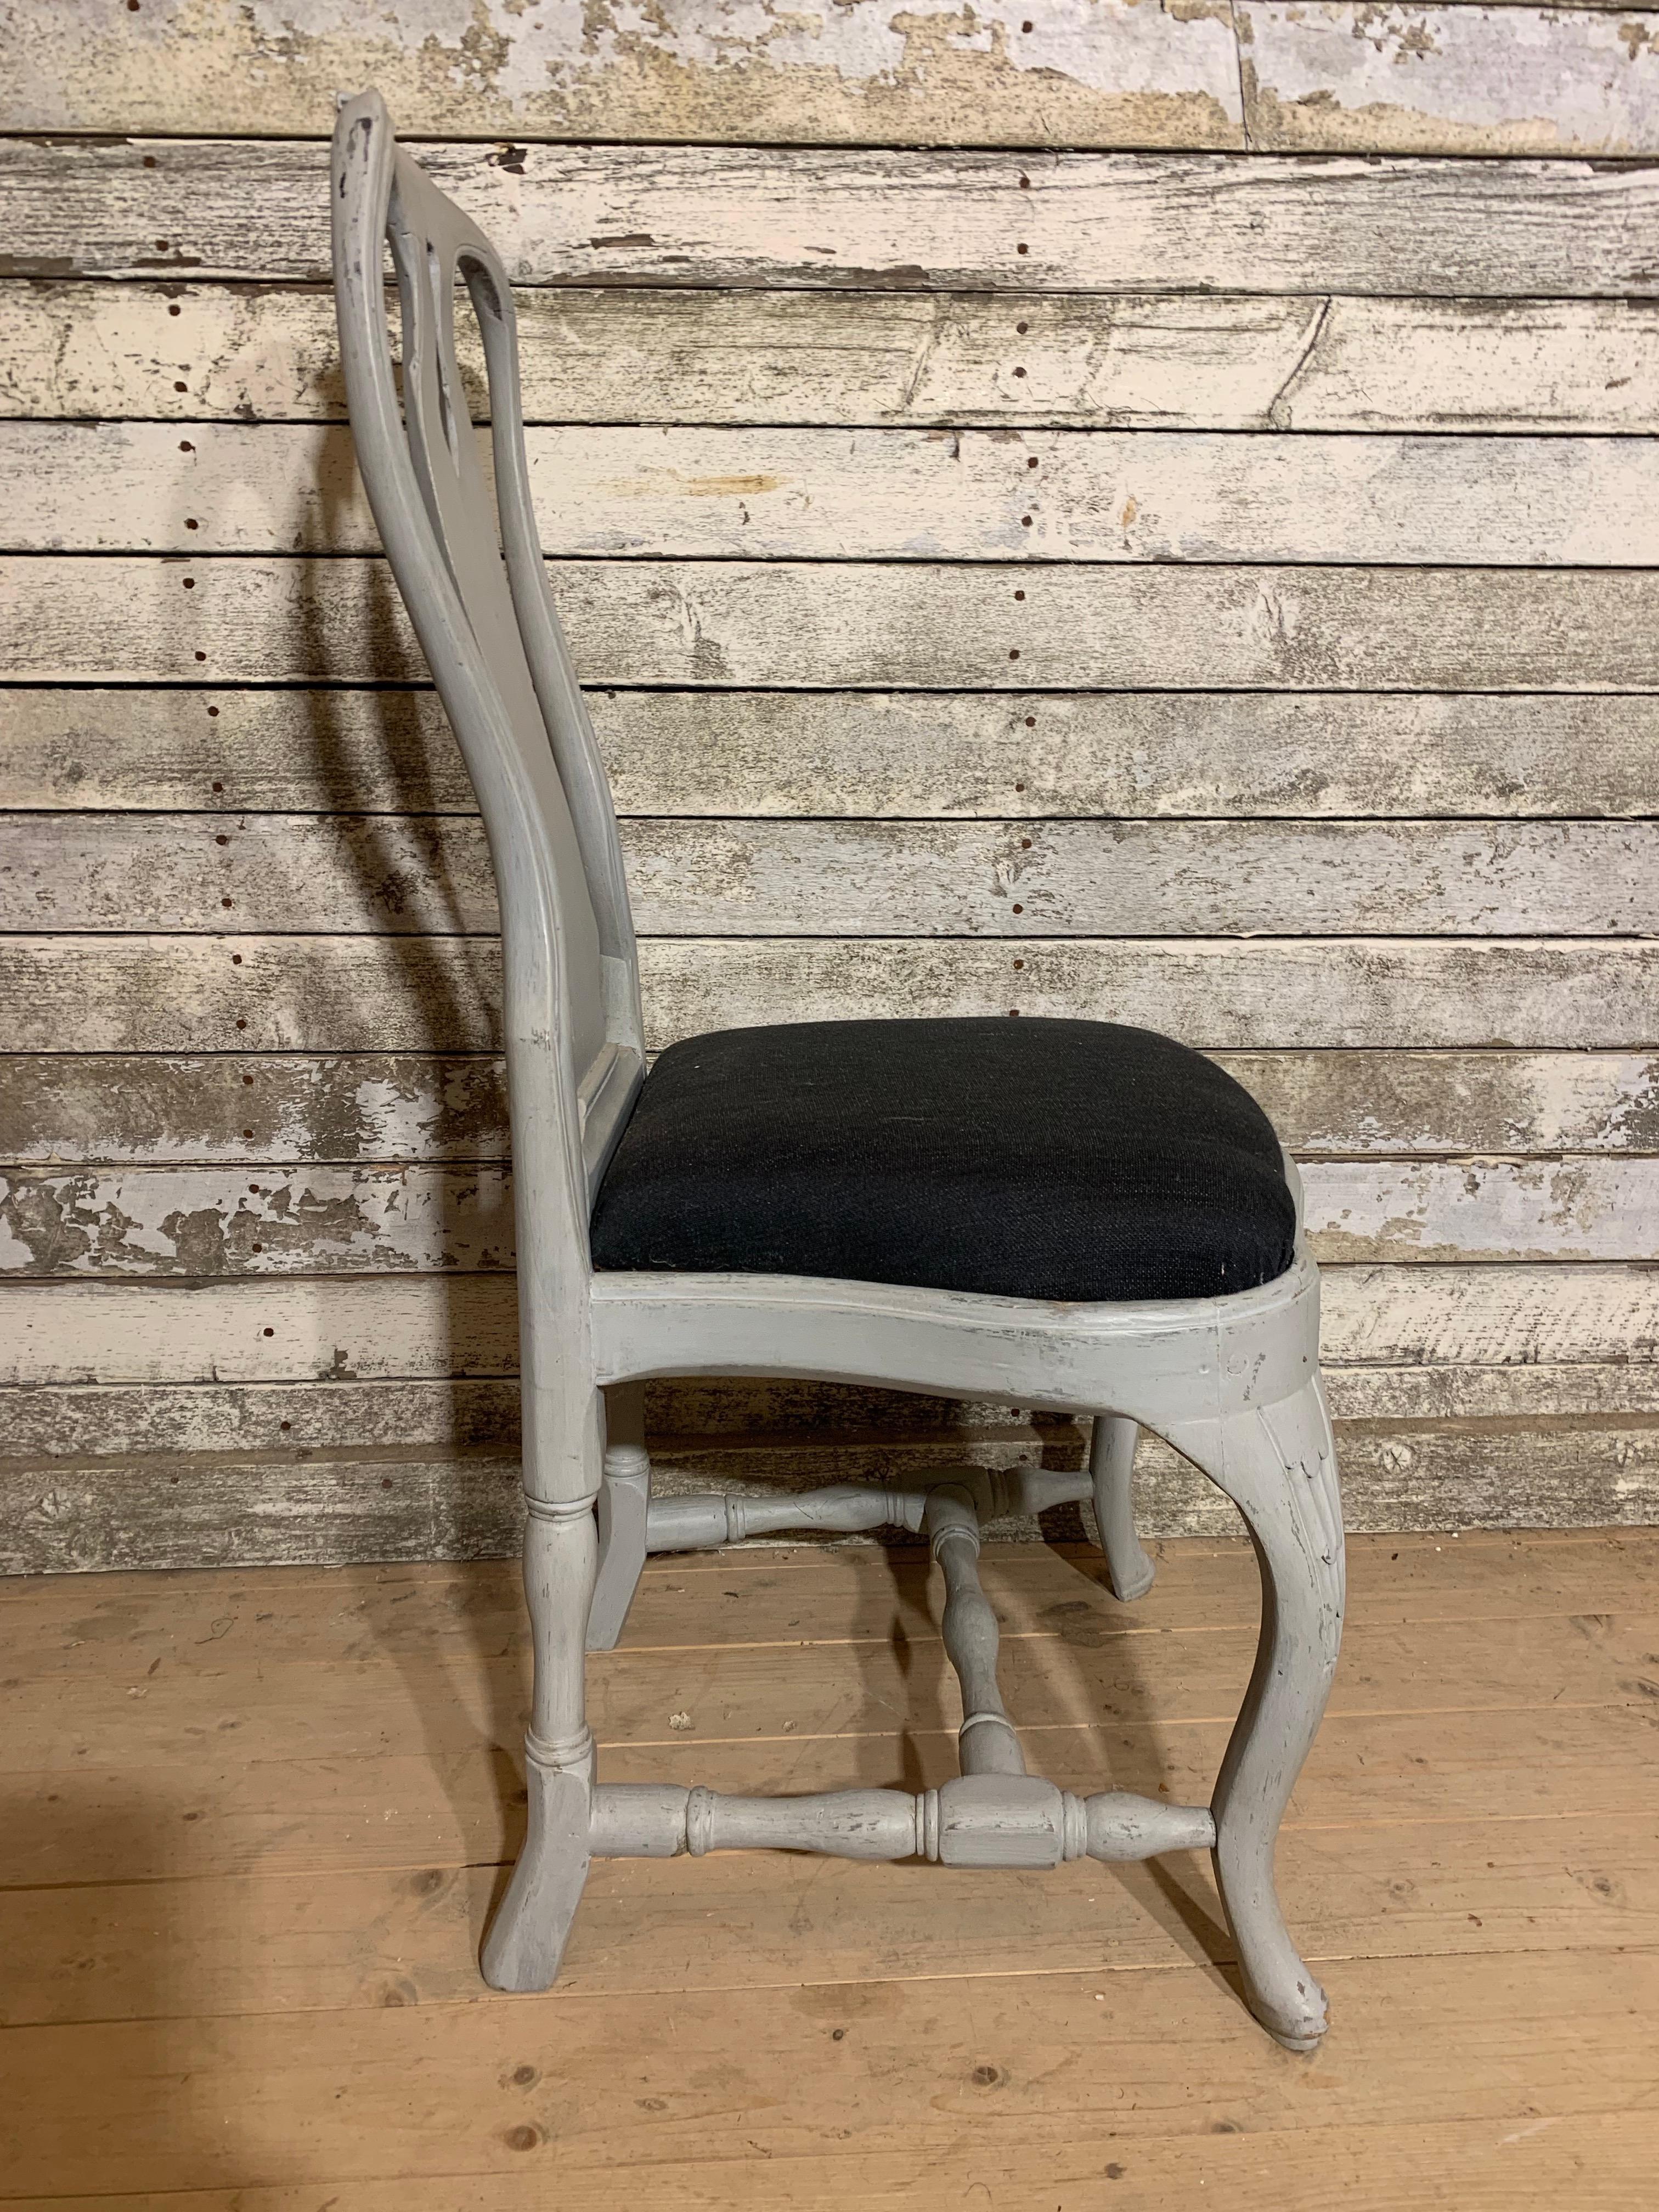 Un ensemble de  10 chaises rococo similaires fabriquées à Stockholm, vers 1770. Les chaises sont fabriquées en aulne, un bois très léger. 

À Stockholm, ils ont fabriqué des chaises très similaires et de la meilleure qualité. La haute qualité des